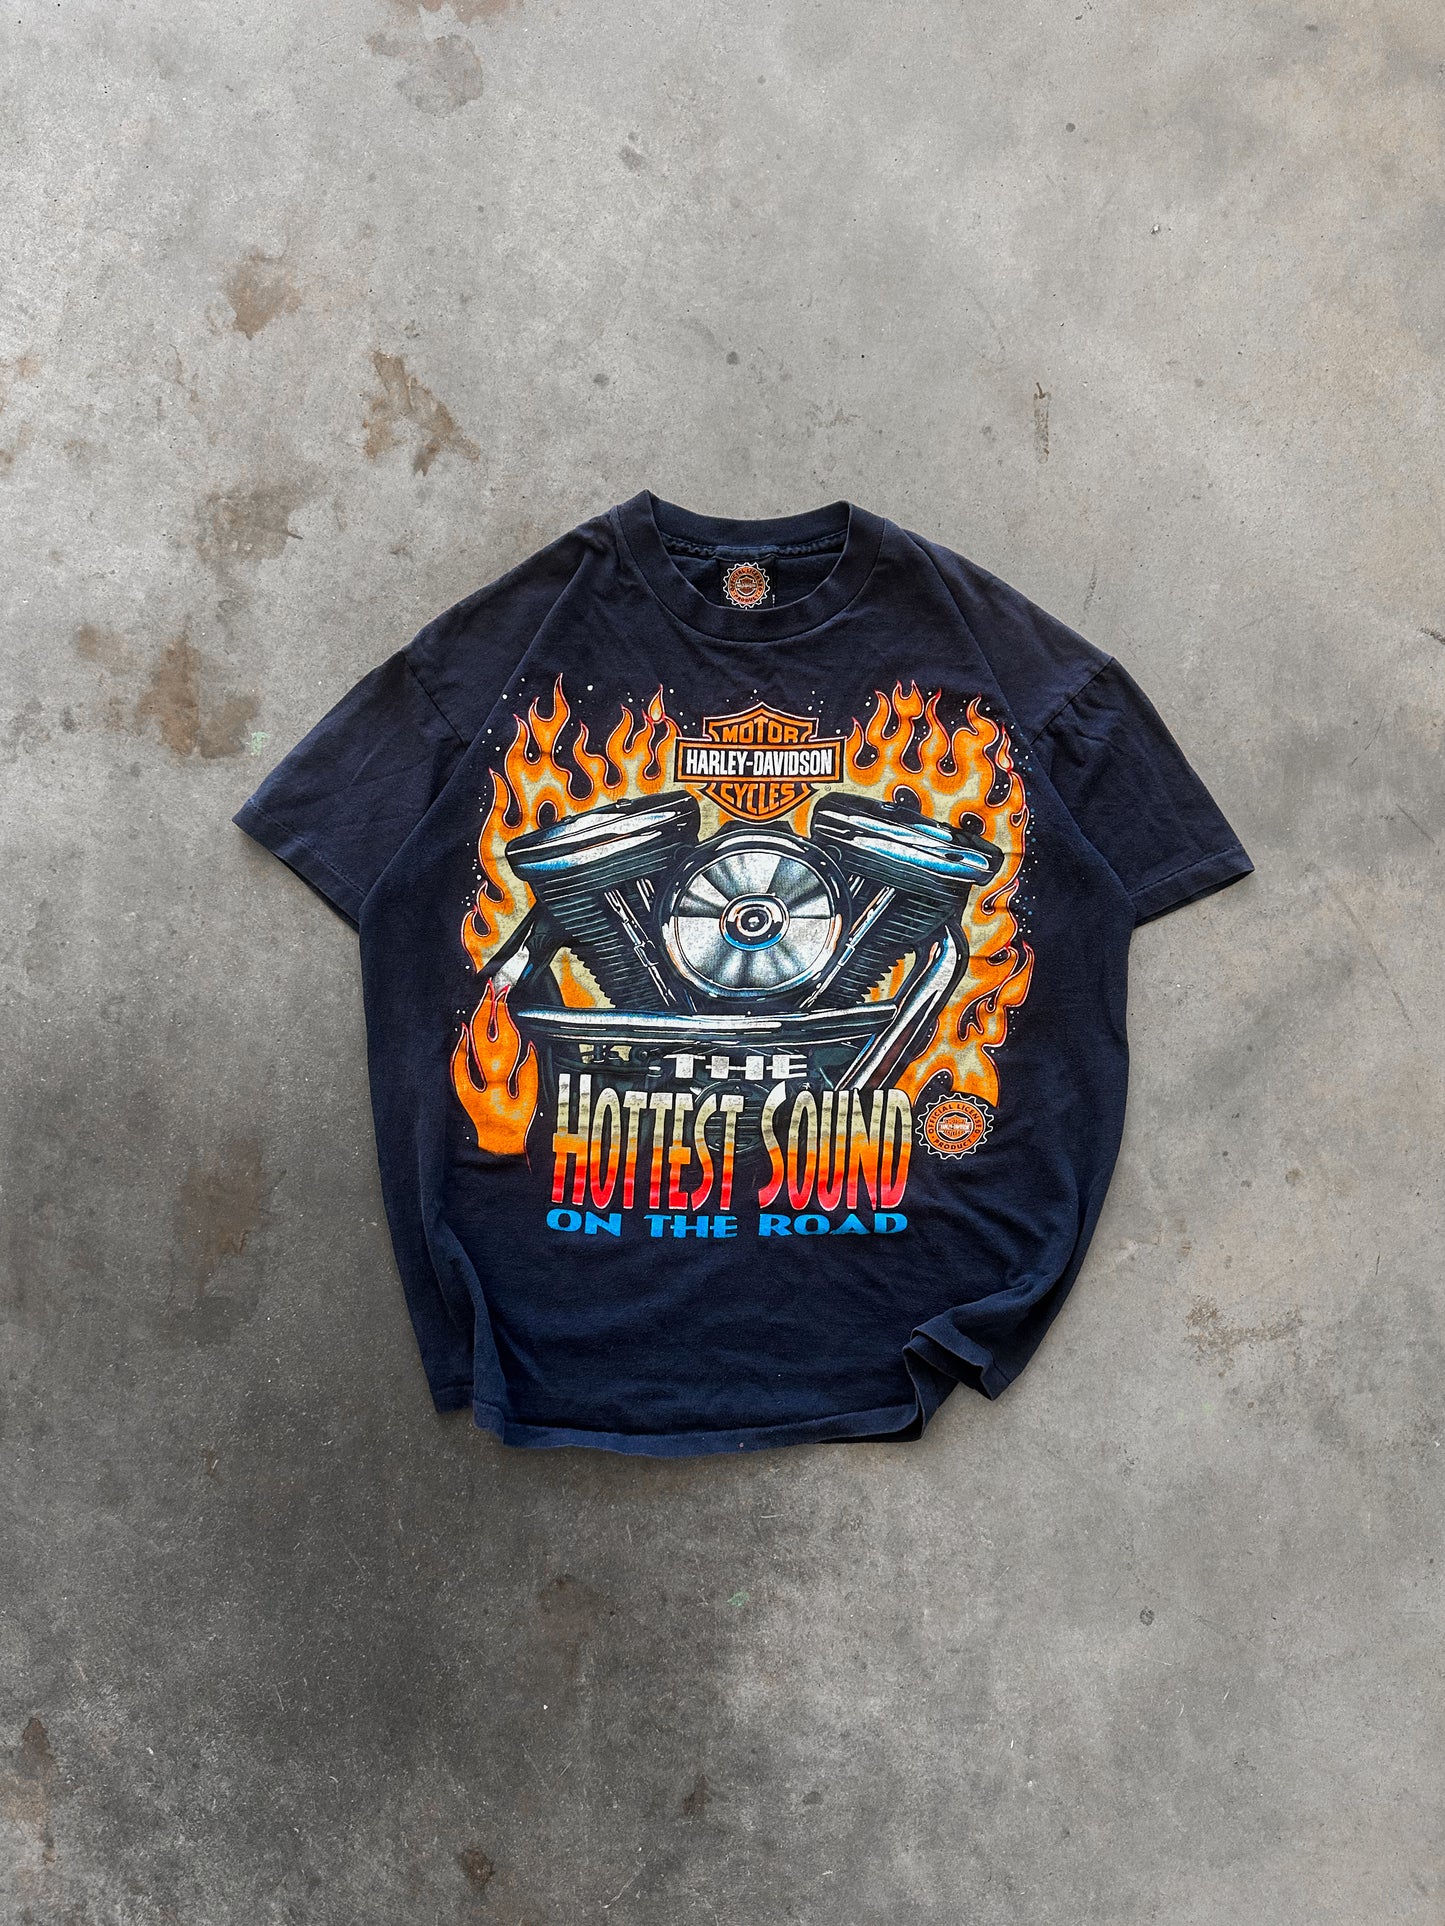 1990s Harley Davidson T-Shirt